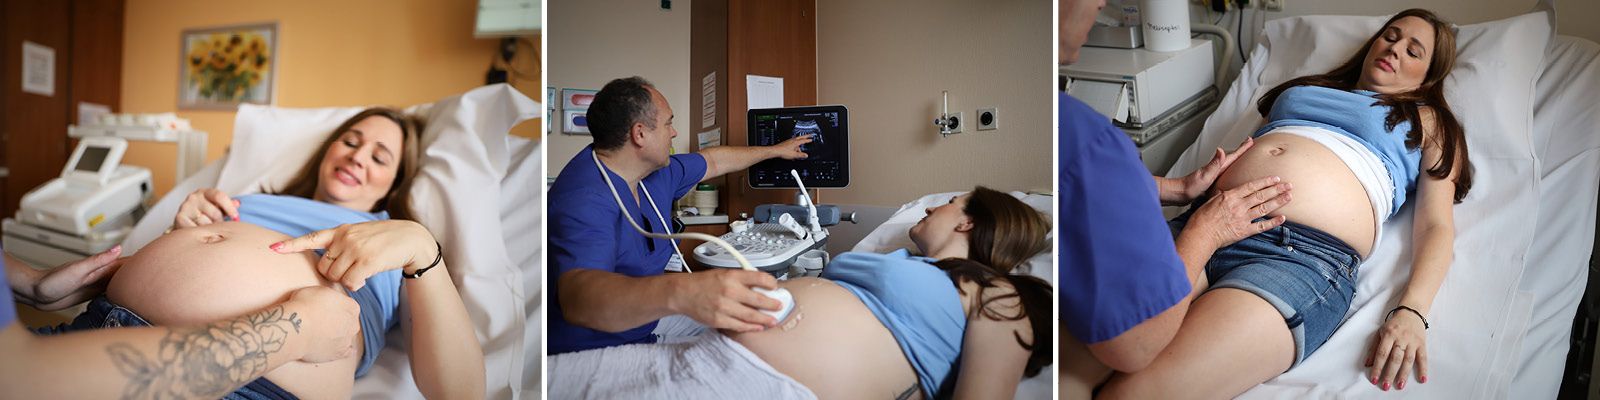 Drei Fotos einer Schwangeren mit Babybauch Slider_Geburtshilfe_1.jpg